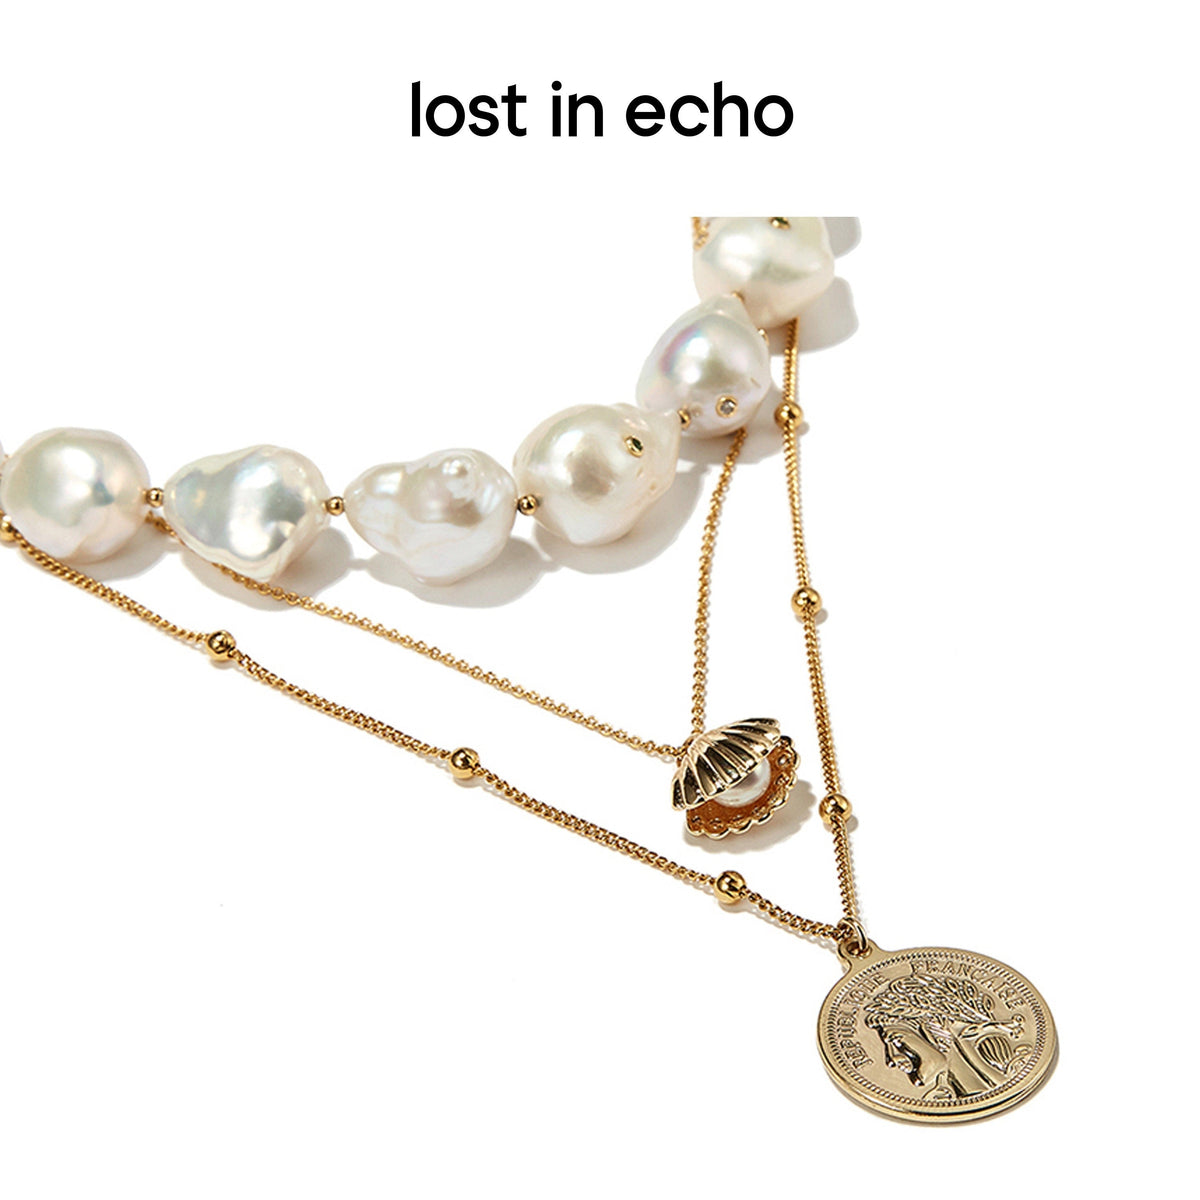 lost in echo/enamel heart pearl necklace